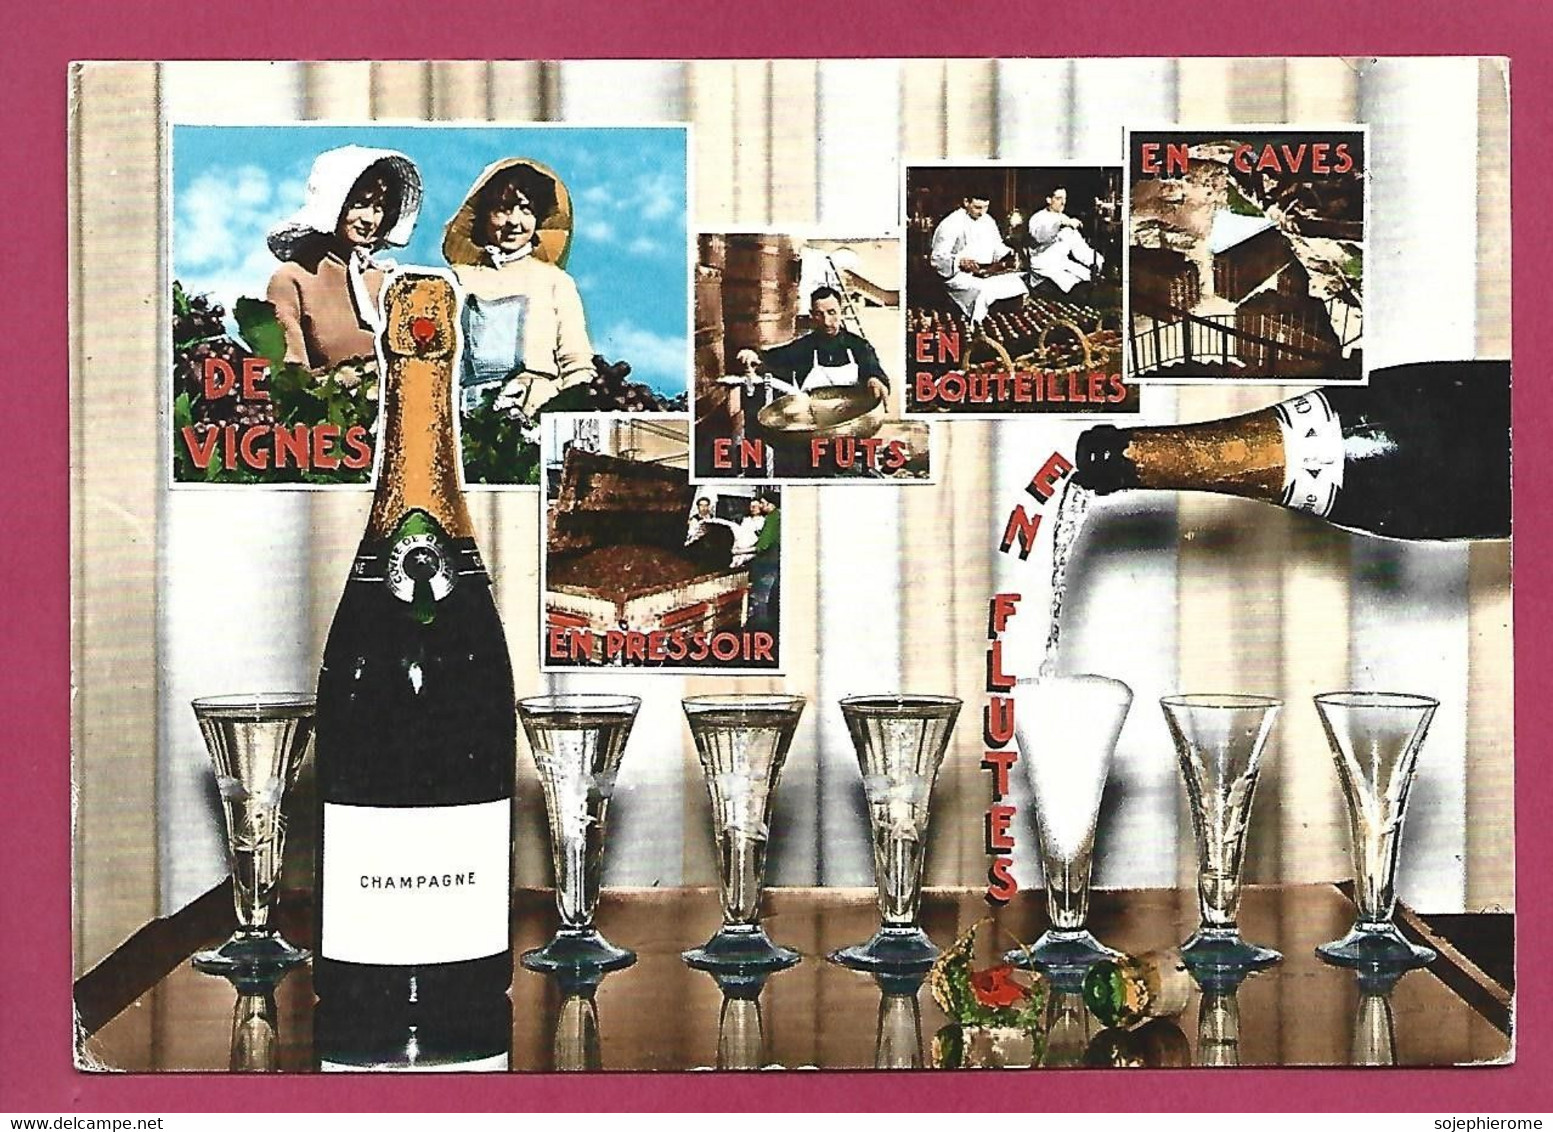 Champagne De Vignes En Pressoir En Fûts En Bouteilles En Caves 2scans - Champagne - Ardenne